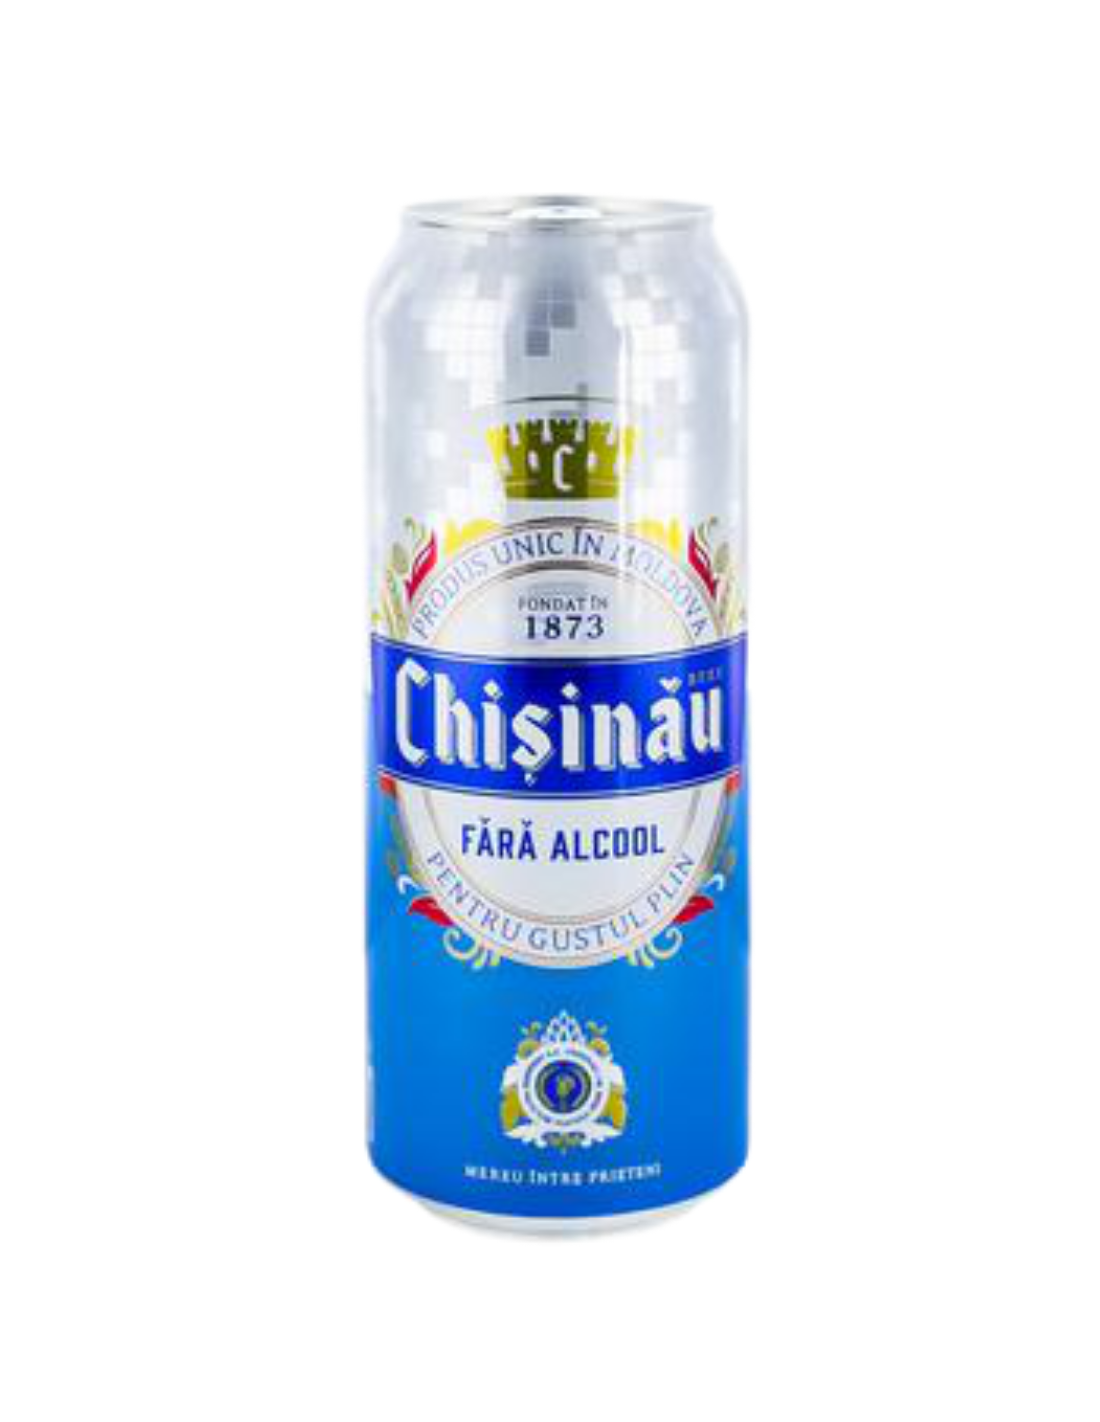 Bere blonda fara alcool Chisinau, 0% alc., 0.5L, doza, Republica Moldova alcooldiscount.ro